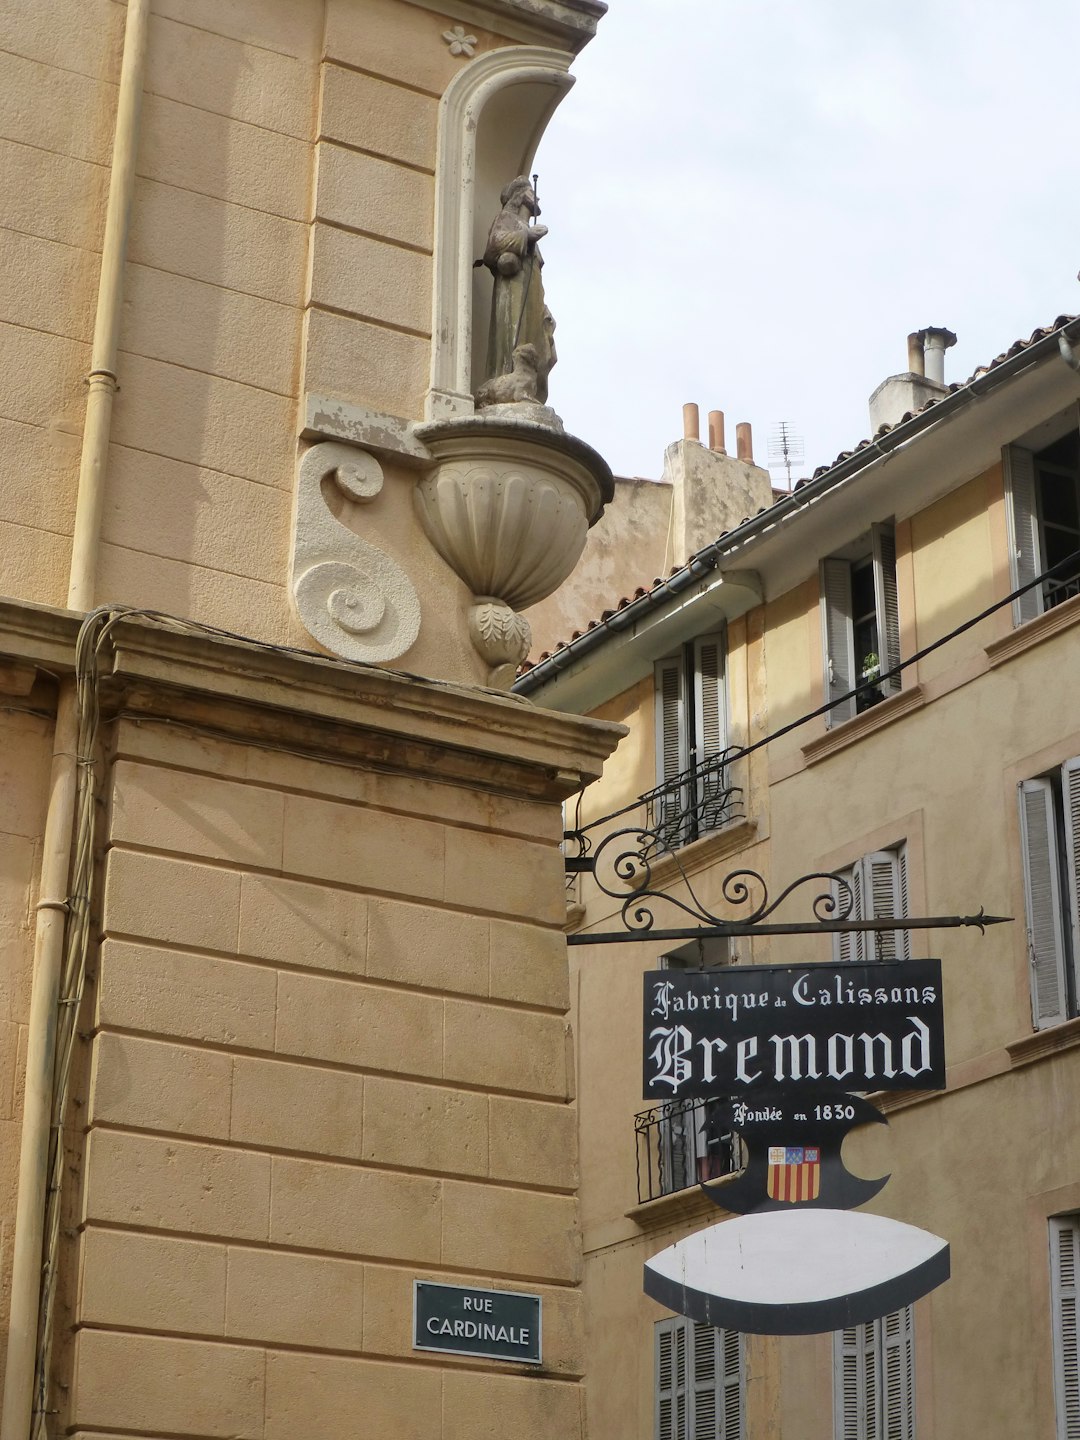 Angle de la rue Cardinale et de la rue d'Italie, oratoire, et insigne « Calissons Brémond » à Aix, Bouches-du-Rhône, France